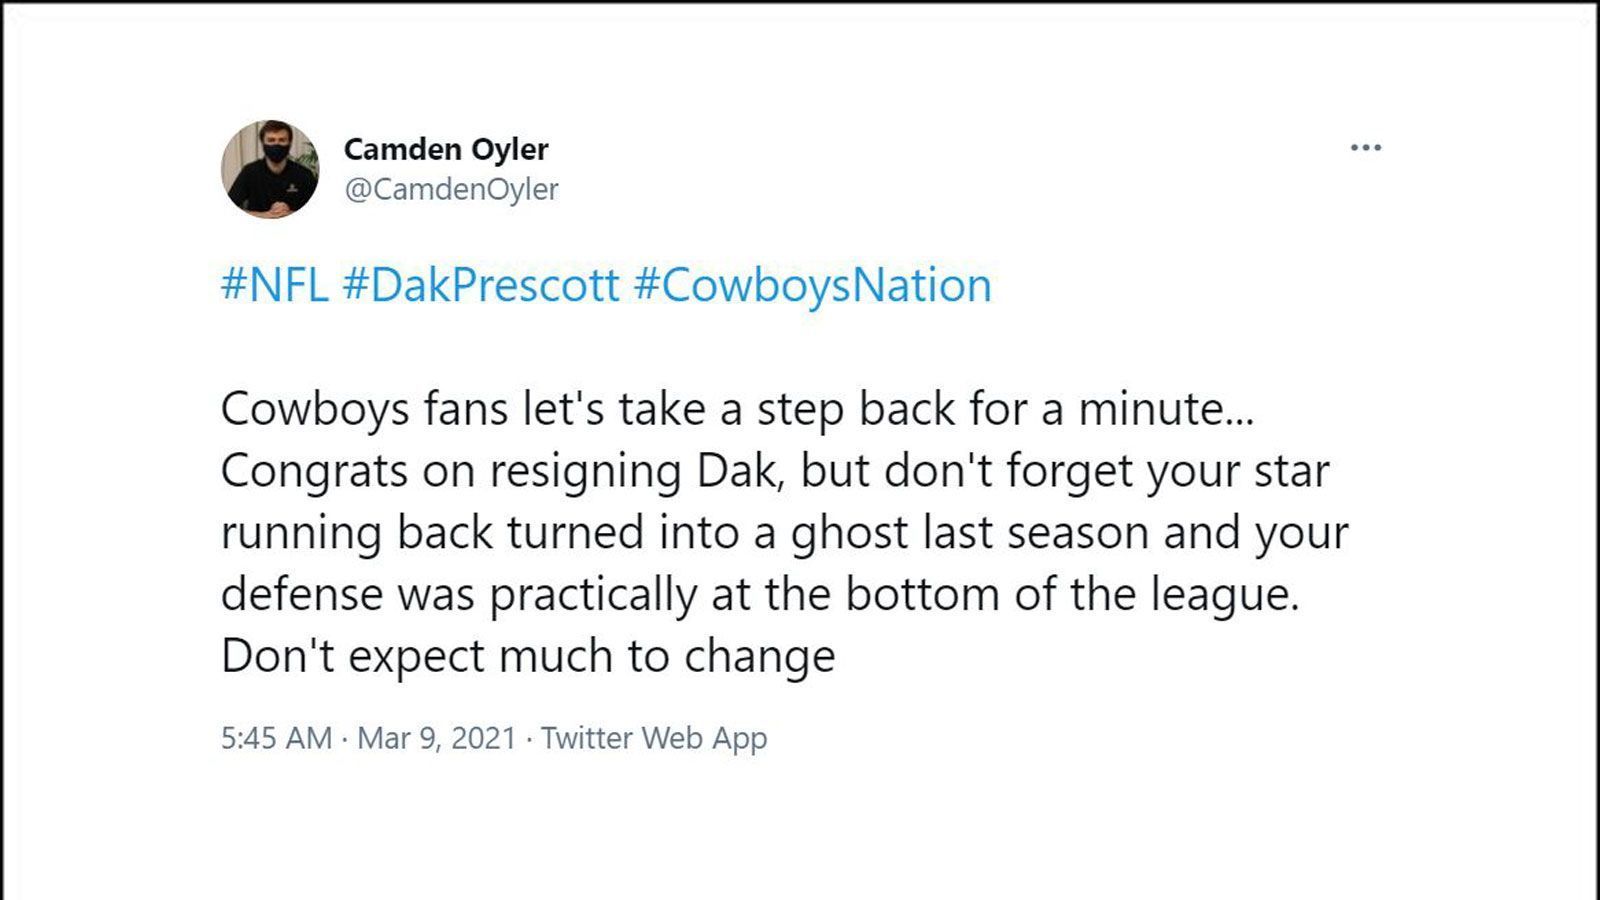 
                <strong>Die Netzreaktionen zum Prescott-Deal</strong><br>
                "CamdenOyler" will den Hype um den Deal nicht zu groß werden lassen. Schließlich haben die Cowboys noch andere Baustellen, an denen gearbeitet werden muss.
              